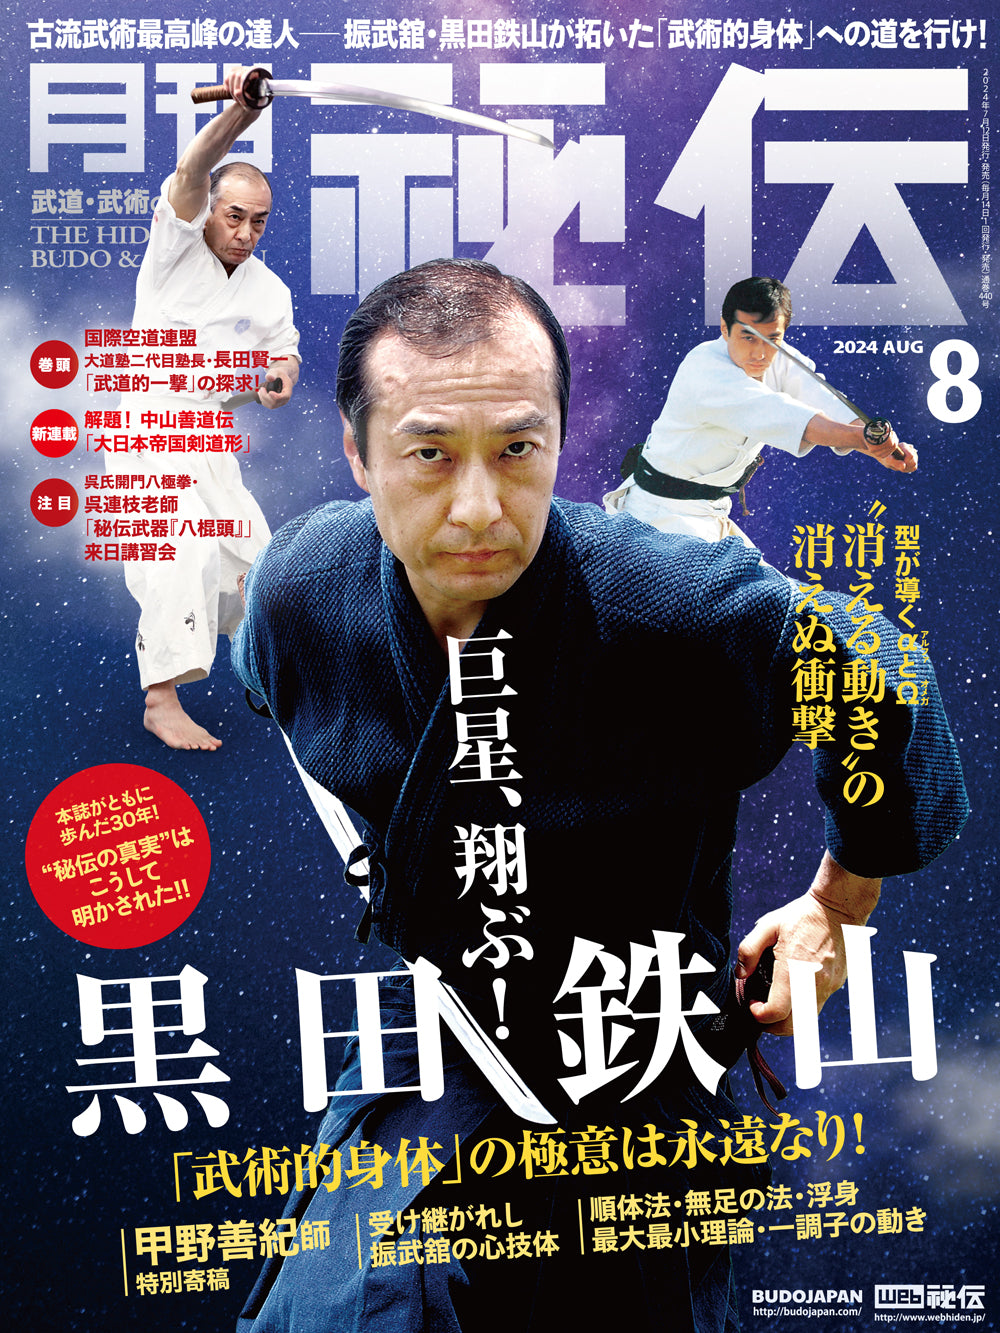 Hiden Budo & Bujutsu Magazine Aug 2024